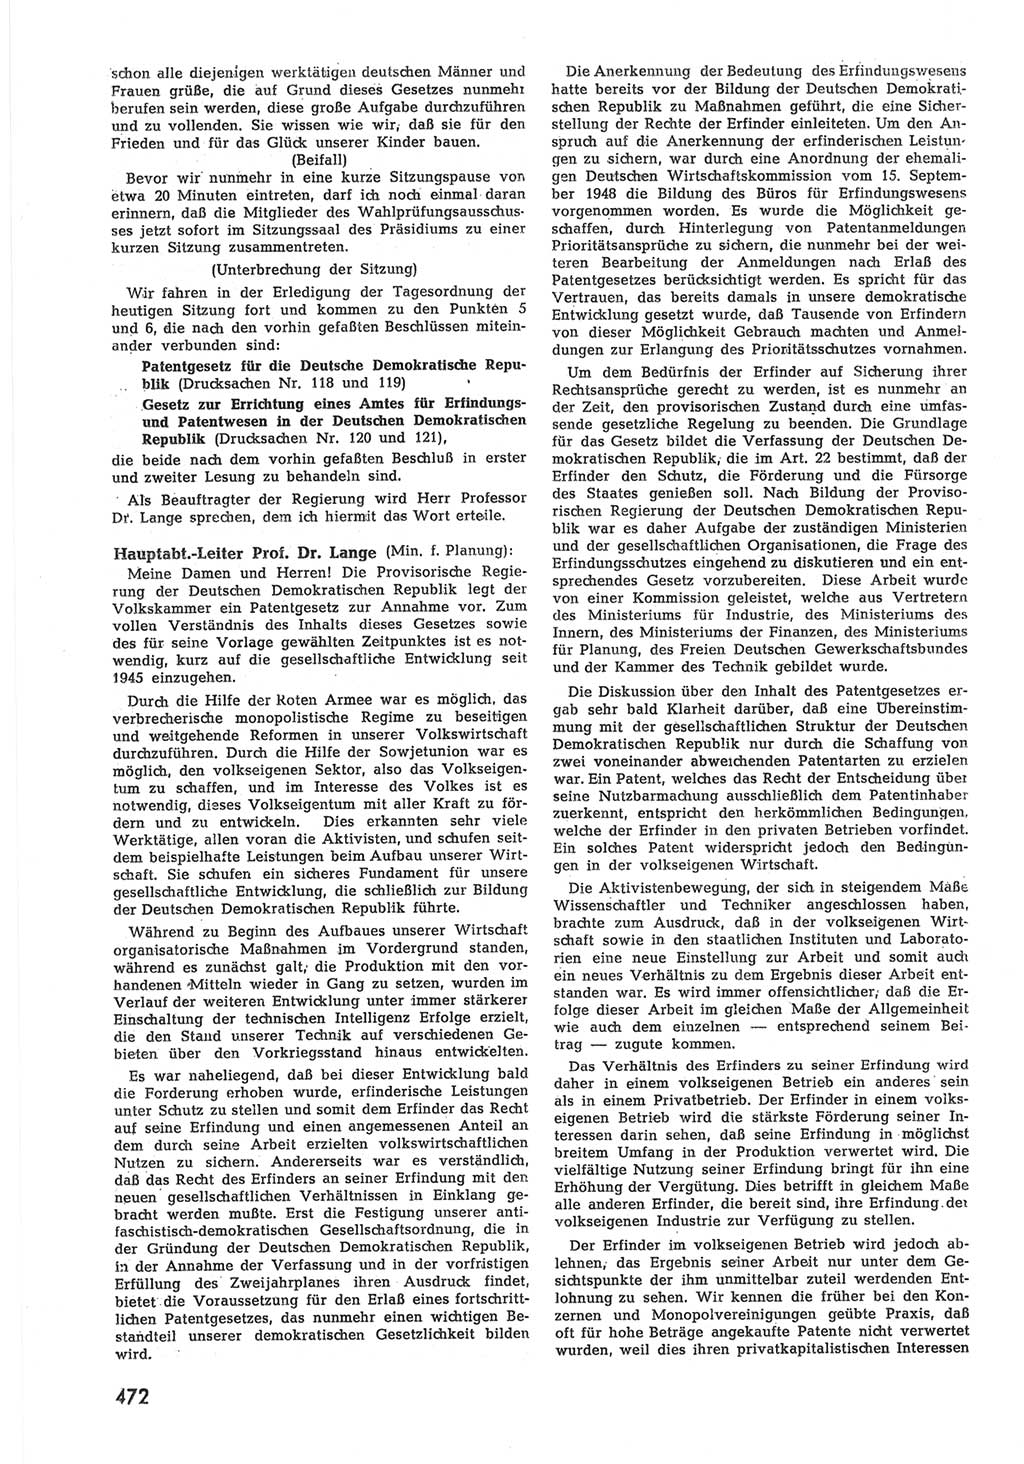 Provisorische Volkskammer (VK) der Deutschen Demokratischen Republik (DDR) 1949-1950, Dokument 490 (Prov. VK DDR 1949-1950, Dok. 490)